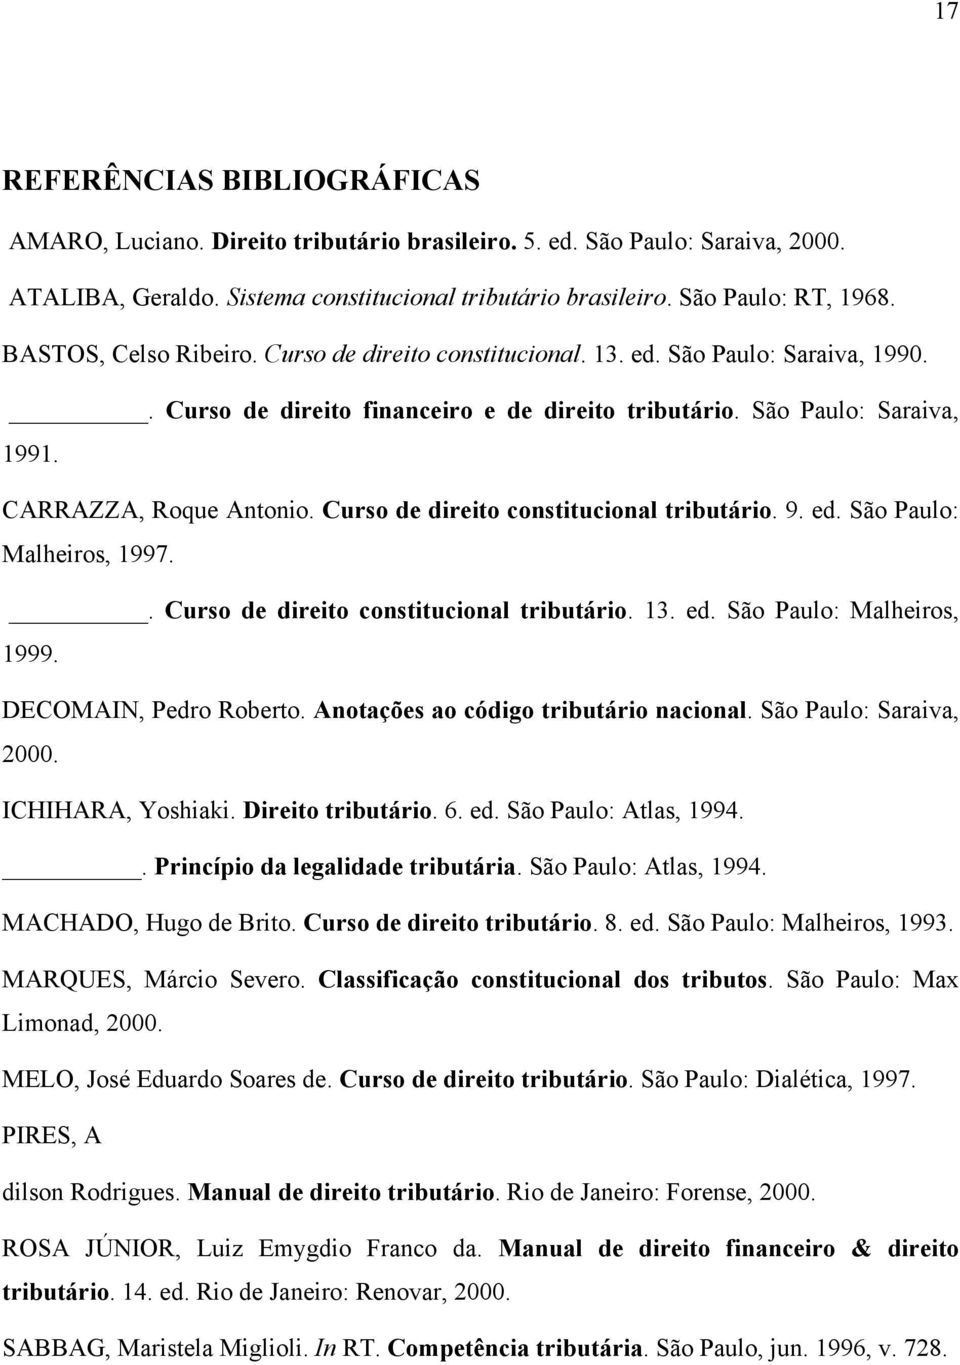 Curso de direito constitucional tributário. 9. ed. São Paulo: Malheiros, 1997.. Curso de direito constitucional tributário. 13. ed. São Paulo: Malheiros, 1999. DECOMAIN, Pedro Roberto.